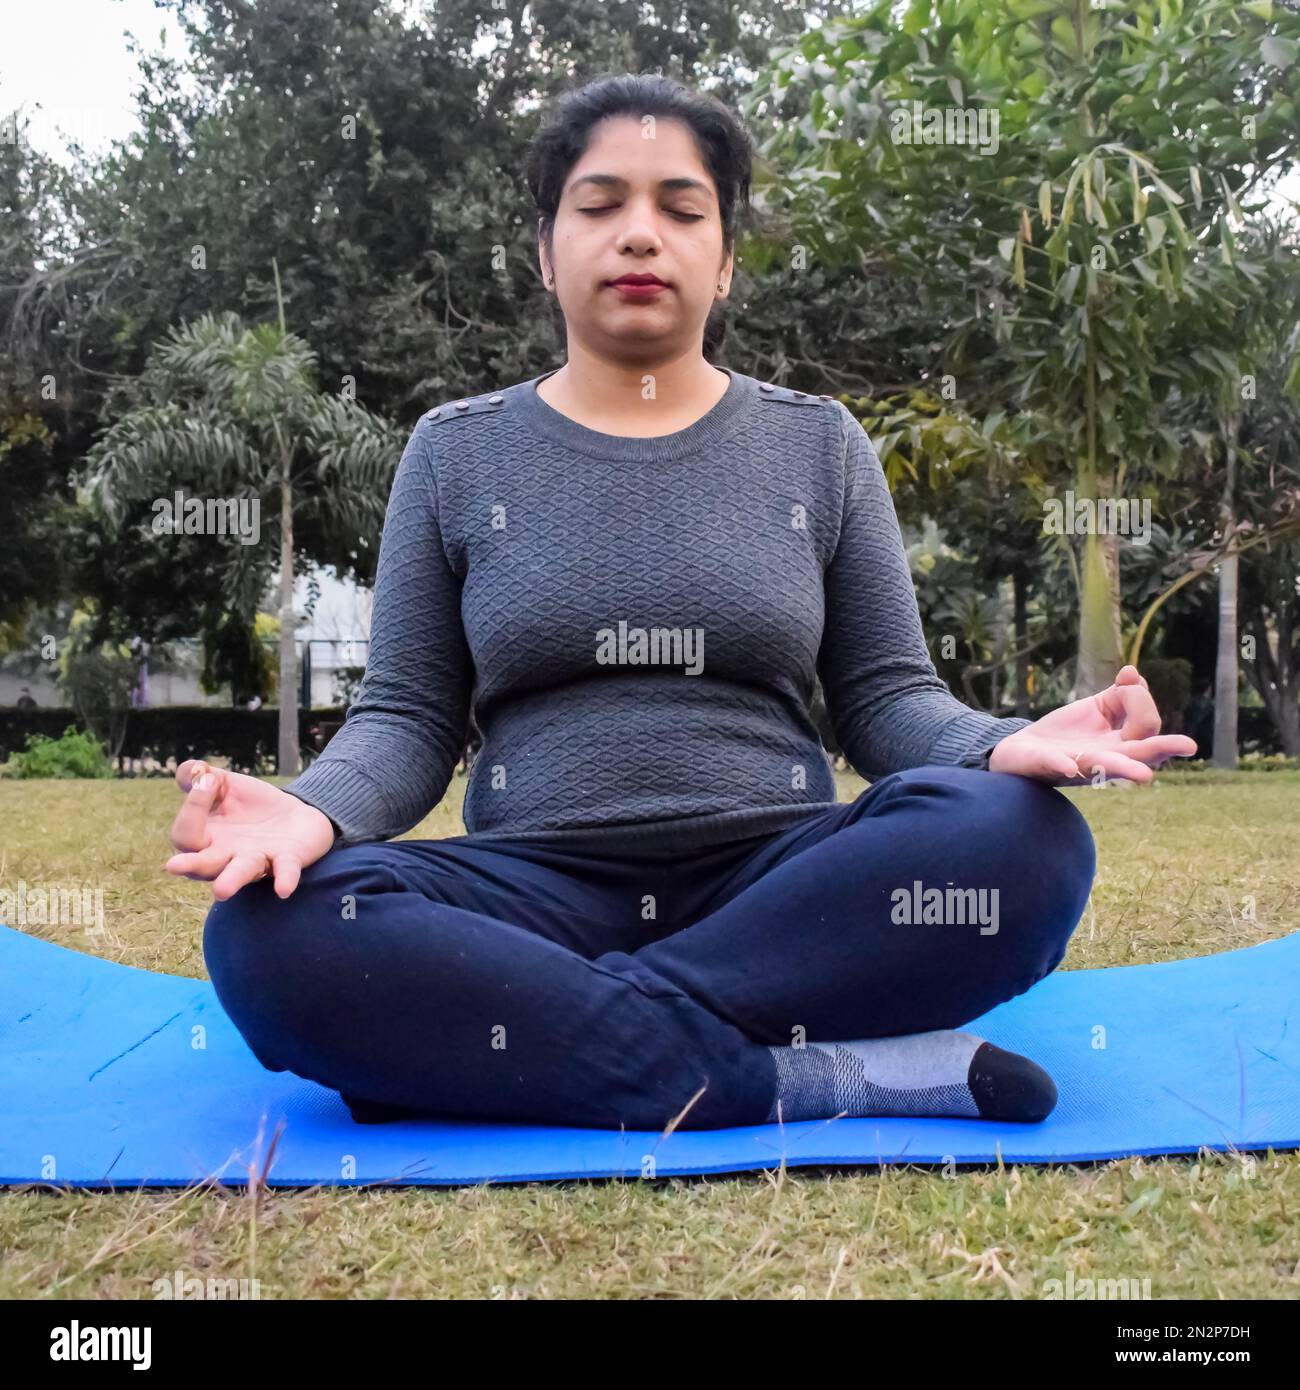 20 Basic Yoga Poses - YOGA PRACTICE